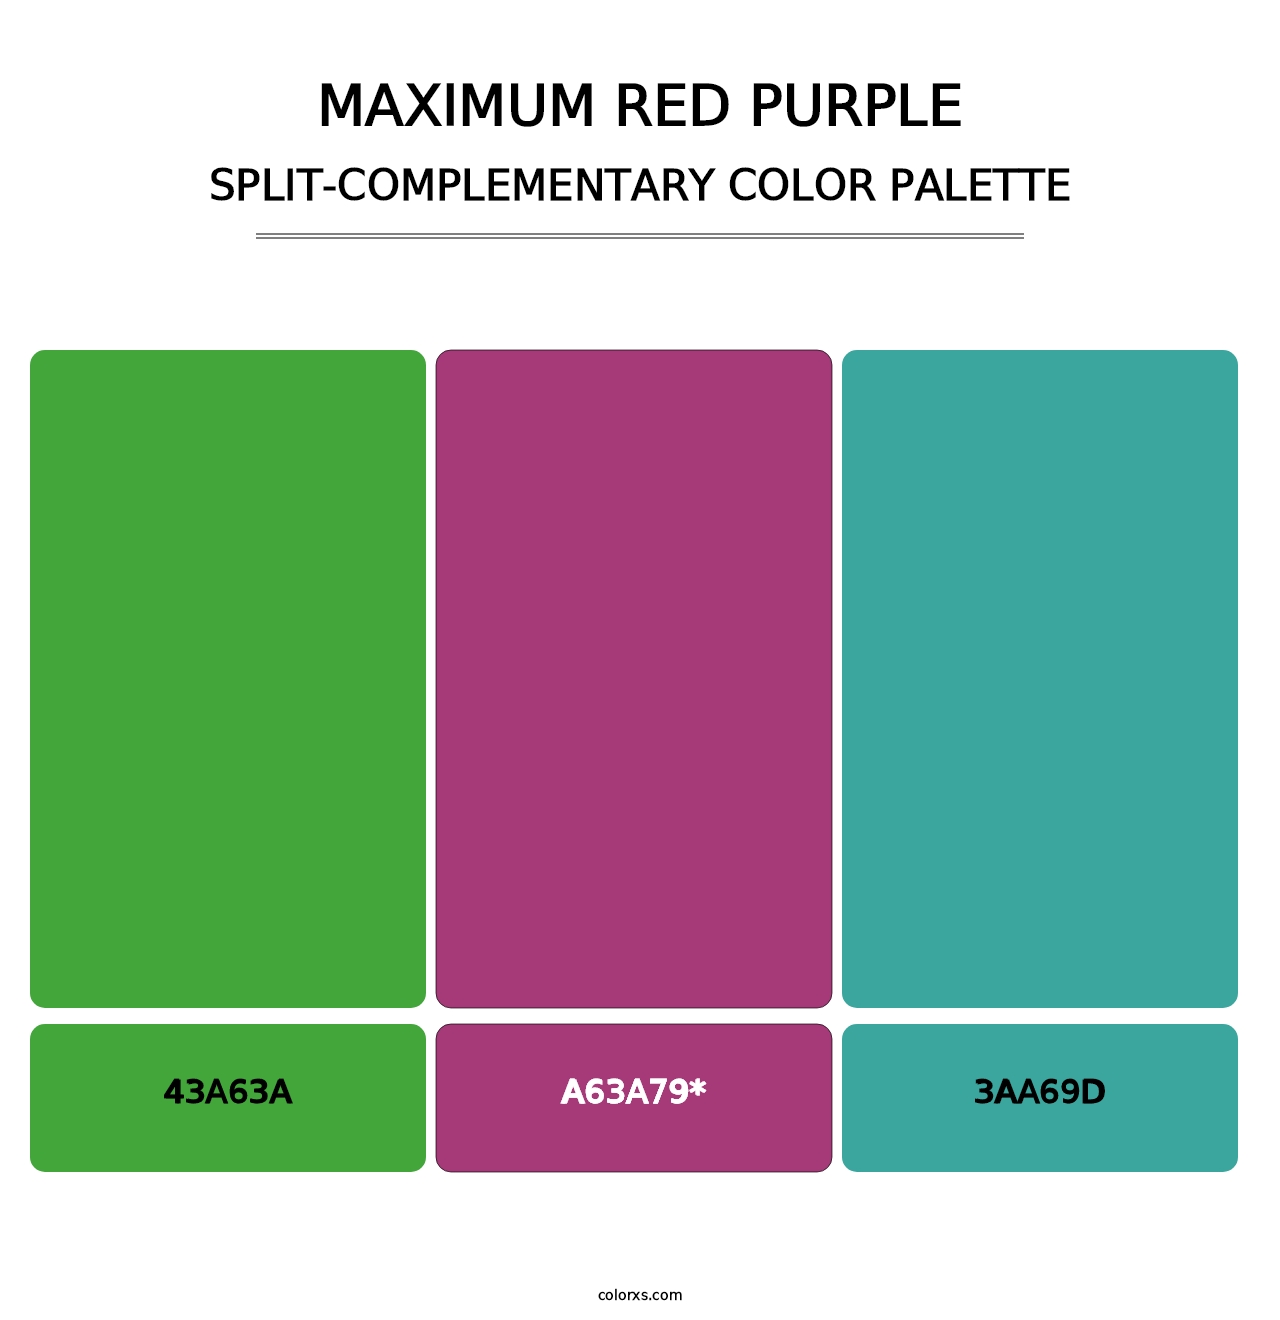 Maximum Red Purple - Split-Complementary Color Palette